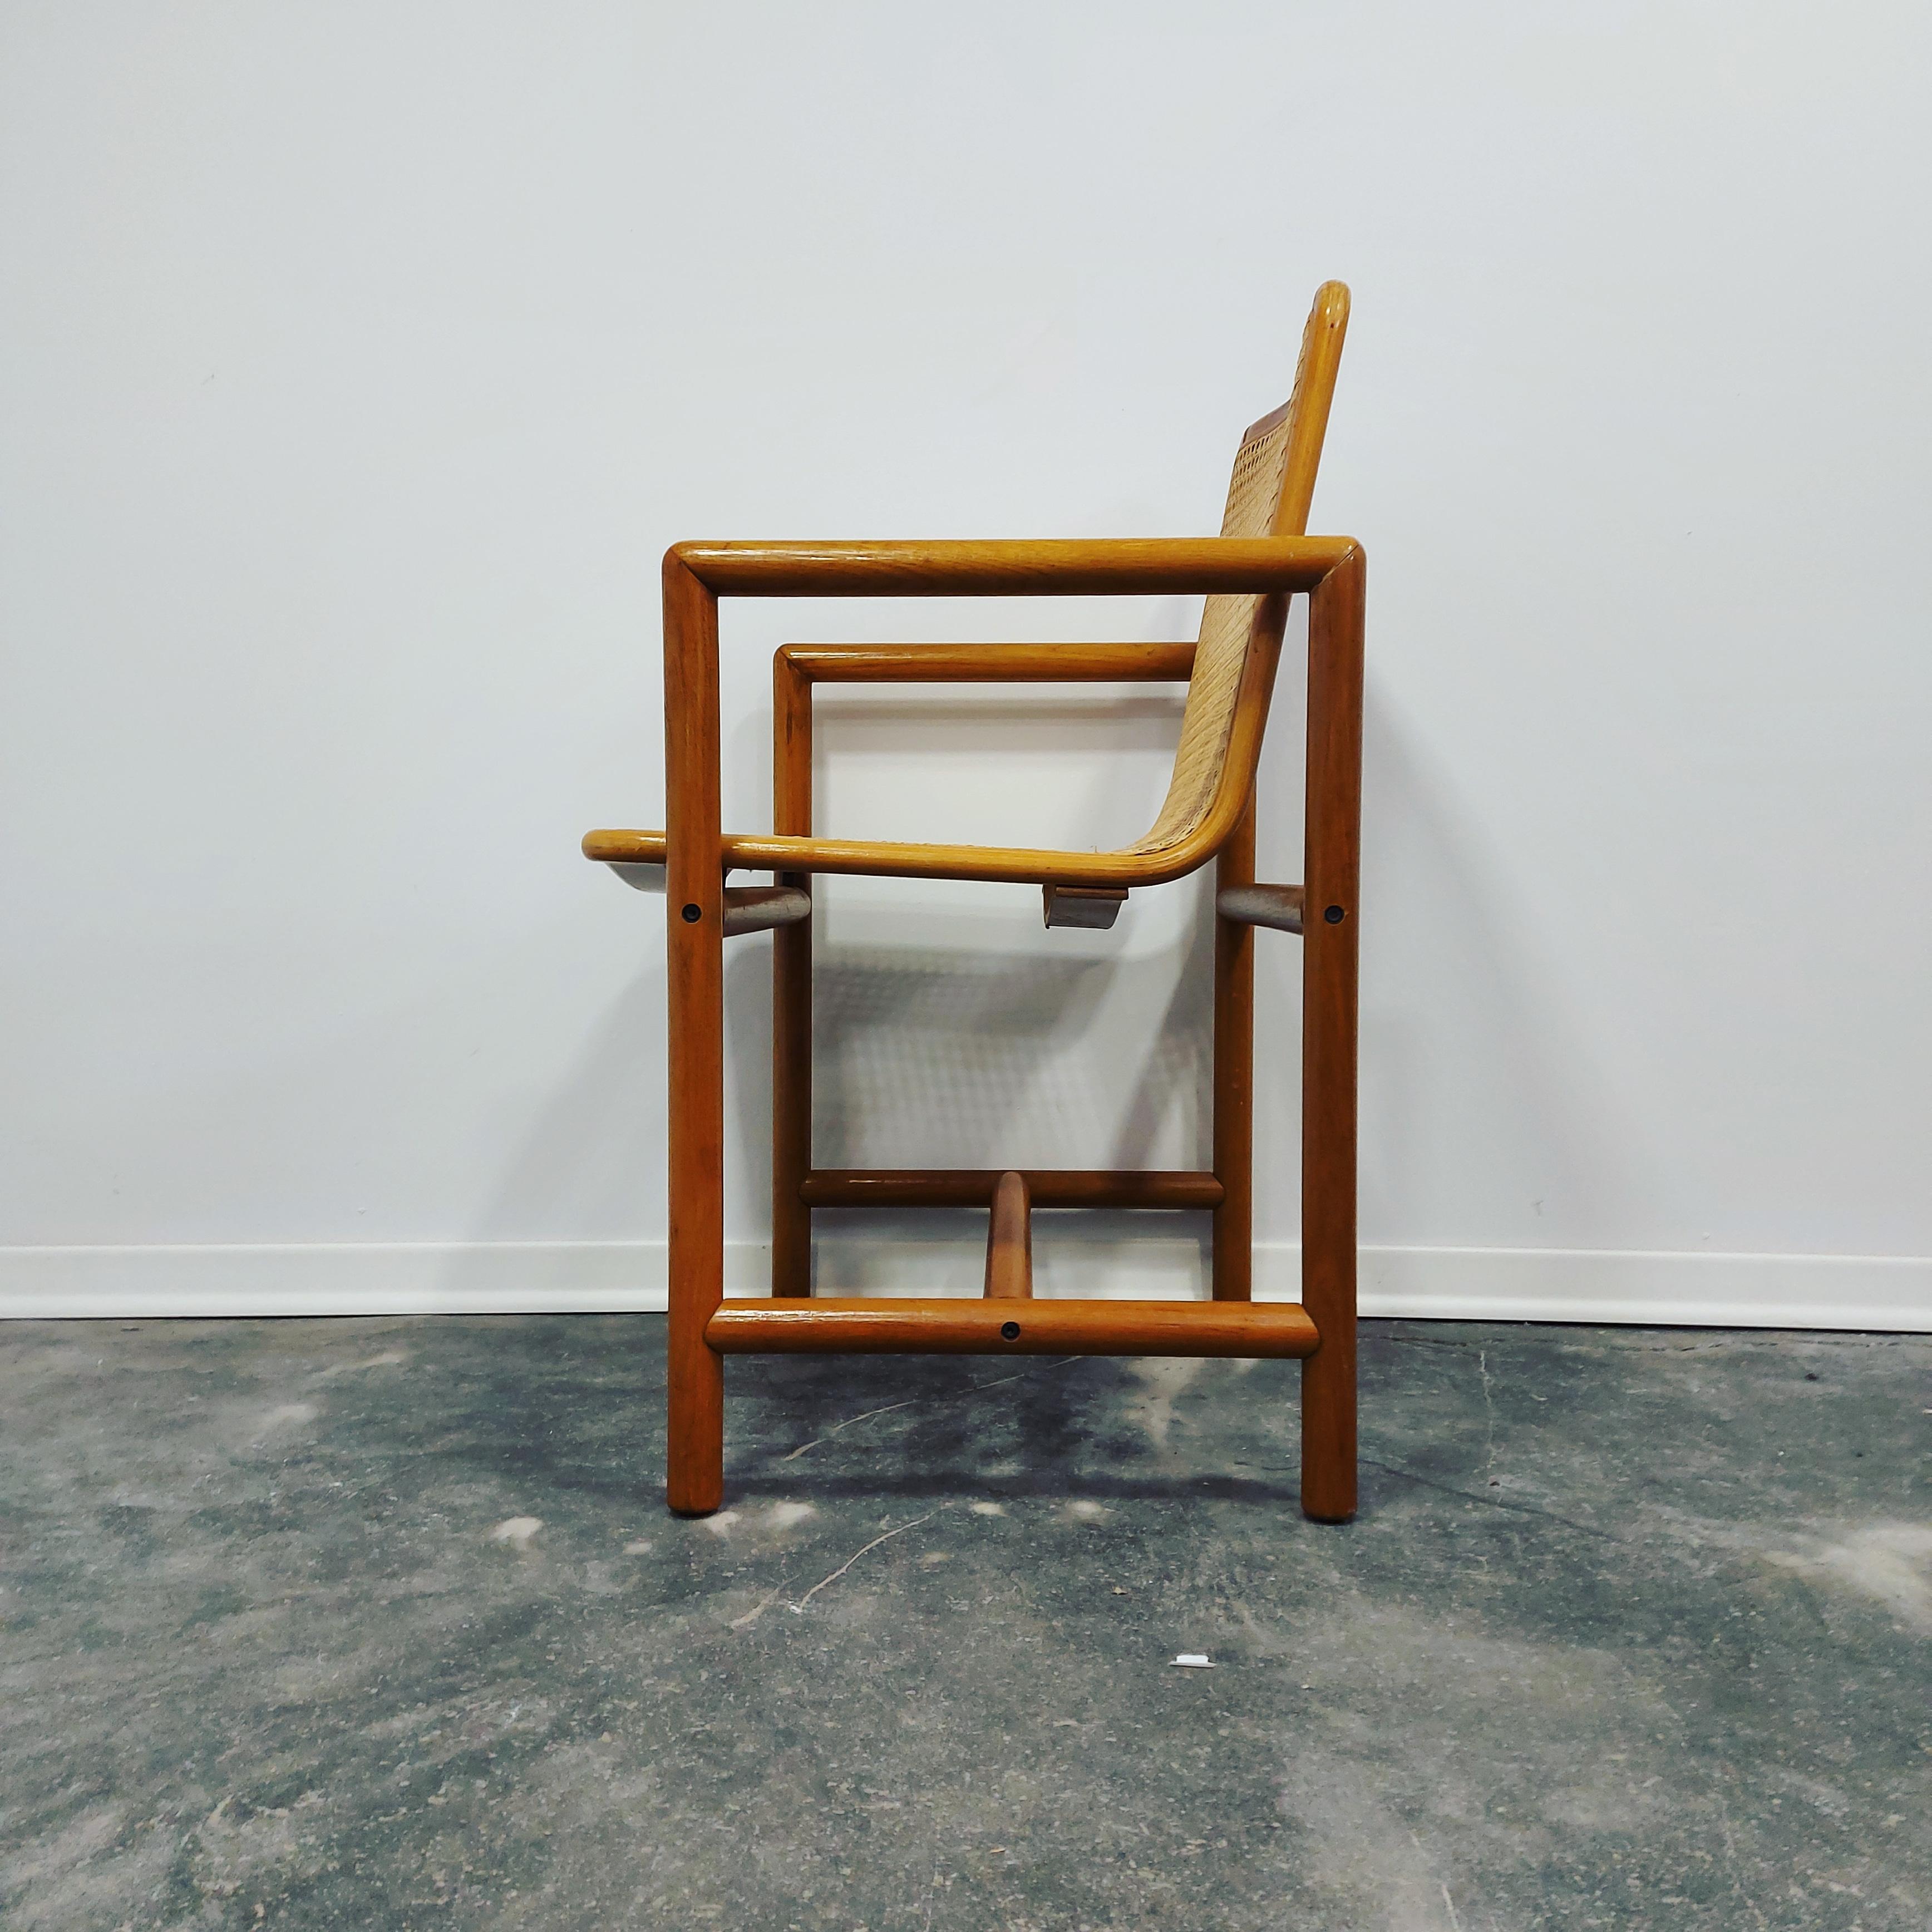 Fauteuil conçu par M. Uršič et produit par l'usine STOL Kamnik dans les années 1970 en Slovénie/Europe.

On peut dire que cette chaise est une pièce emblématique, car elle incarne le style et le confort.

Il peut facilement représenter un meuble